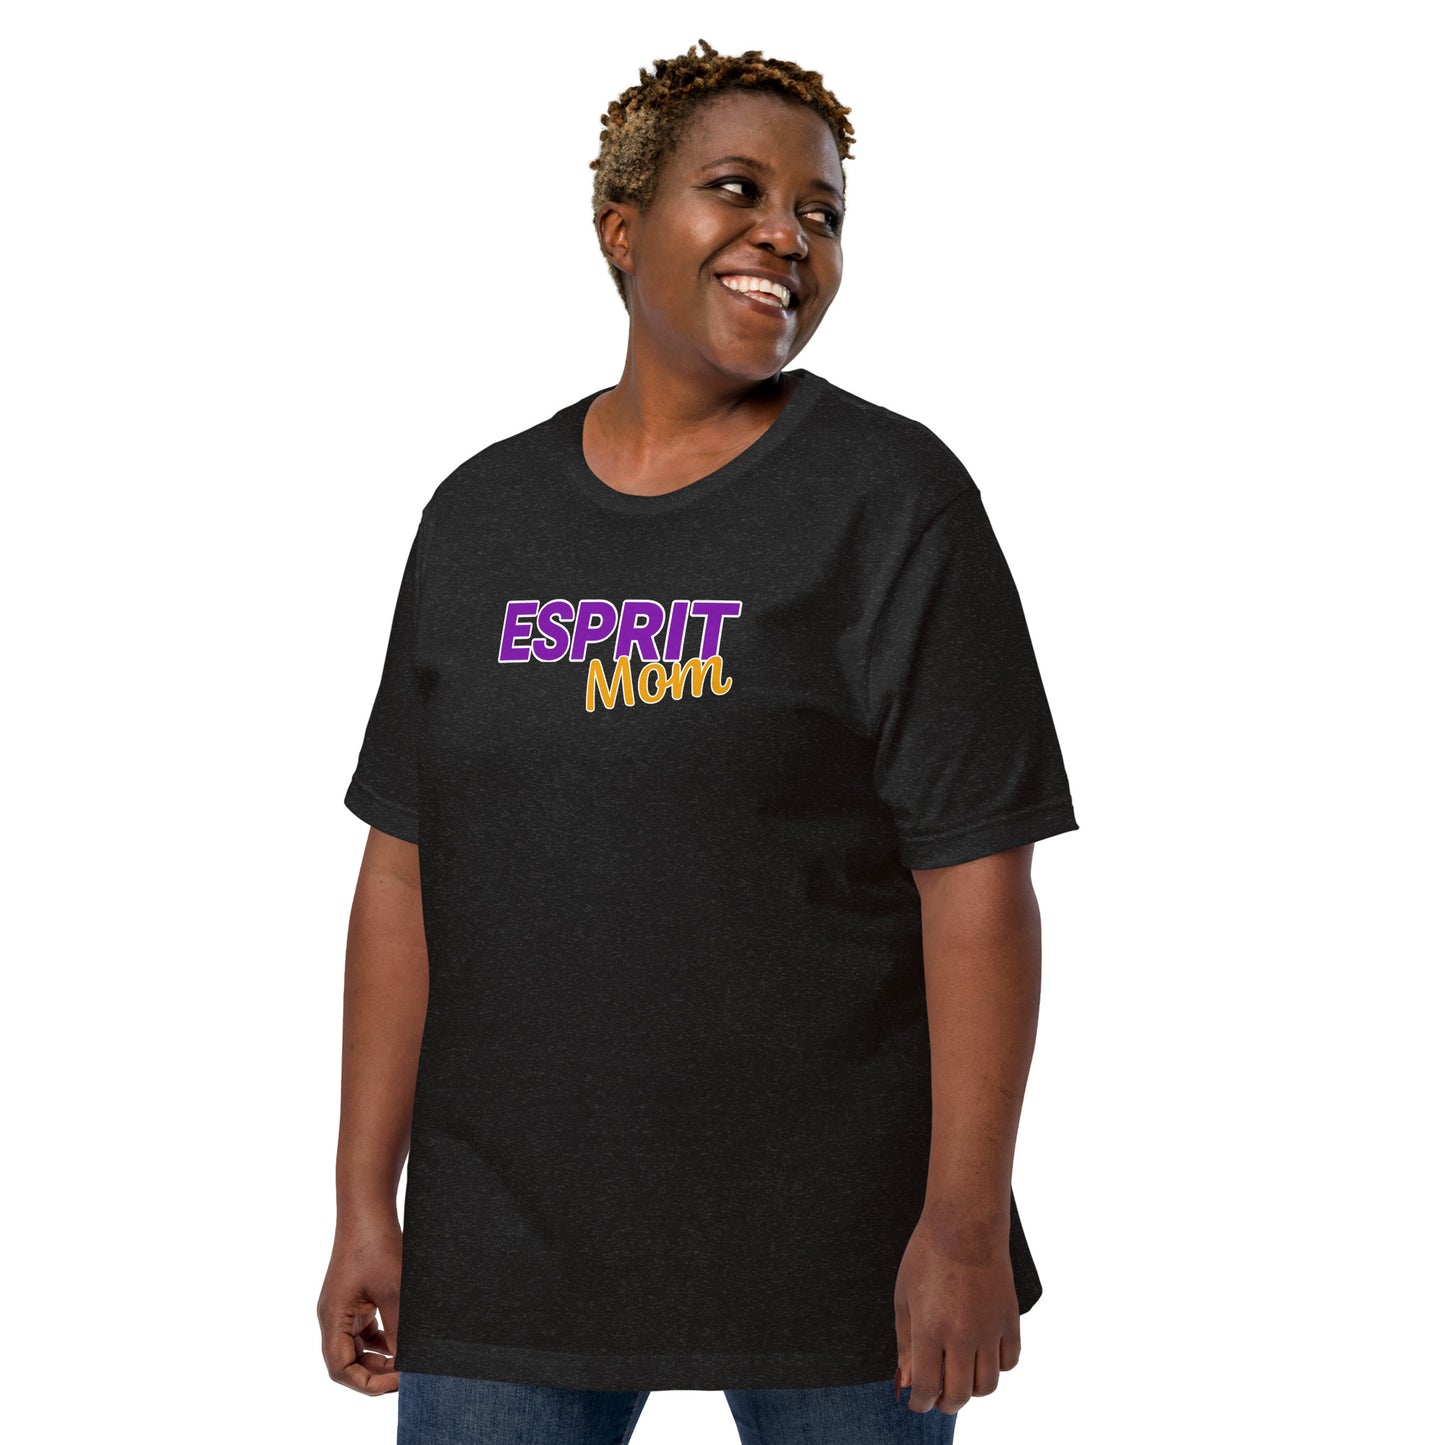 Esprit Performing Arts Adult T-shirt - Esprit Mom